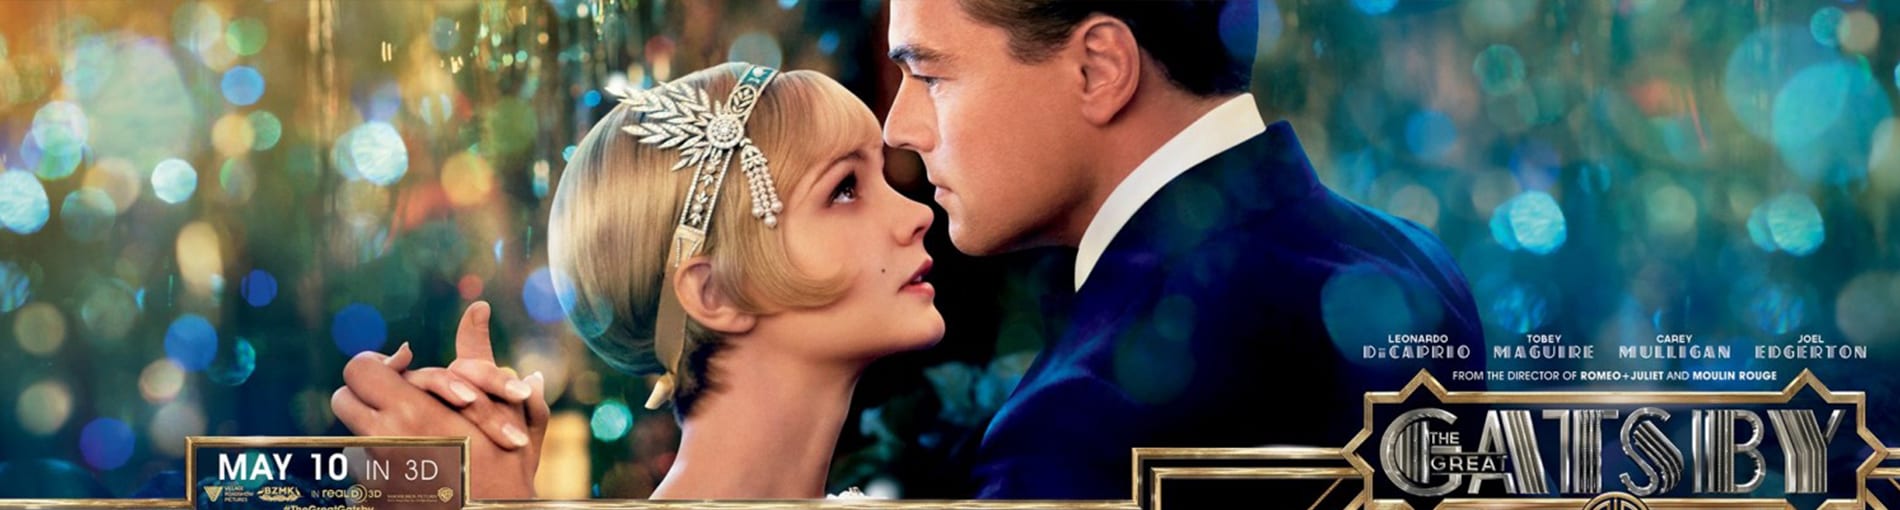 Crítica de cine: El Gran Gatsby